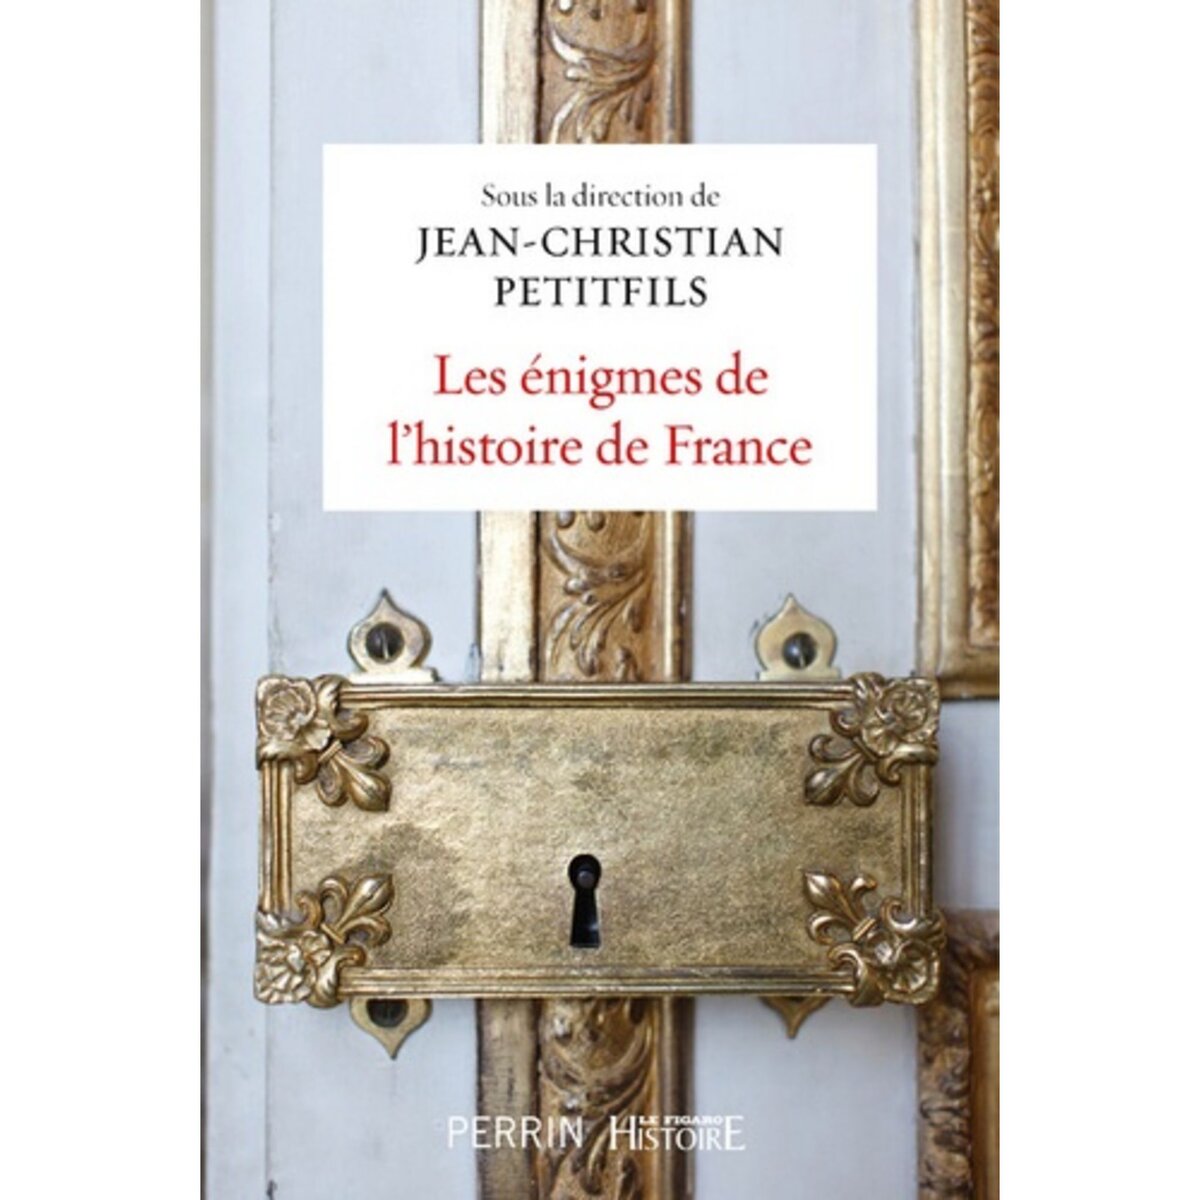  LES ENIGMES DE L'HISTOIRE DE FRANCE, Petitfils Jean-Christian